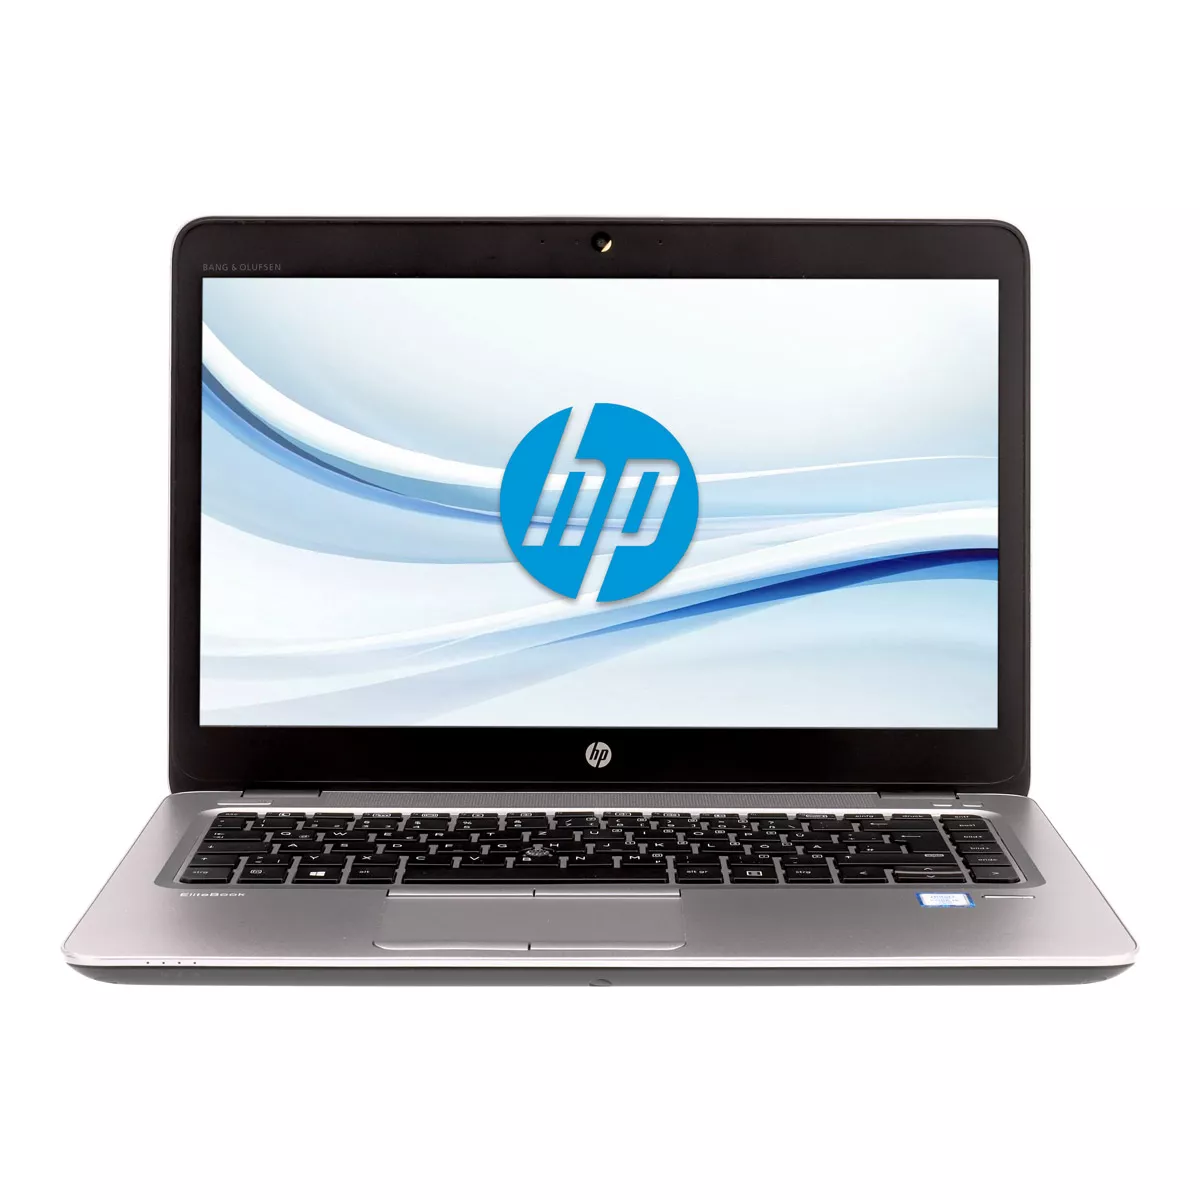 HP EliteBook 840 G4 Core i5 7300U Full-HD 8 GB DDR4 240 GB M.2 SSD A